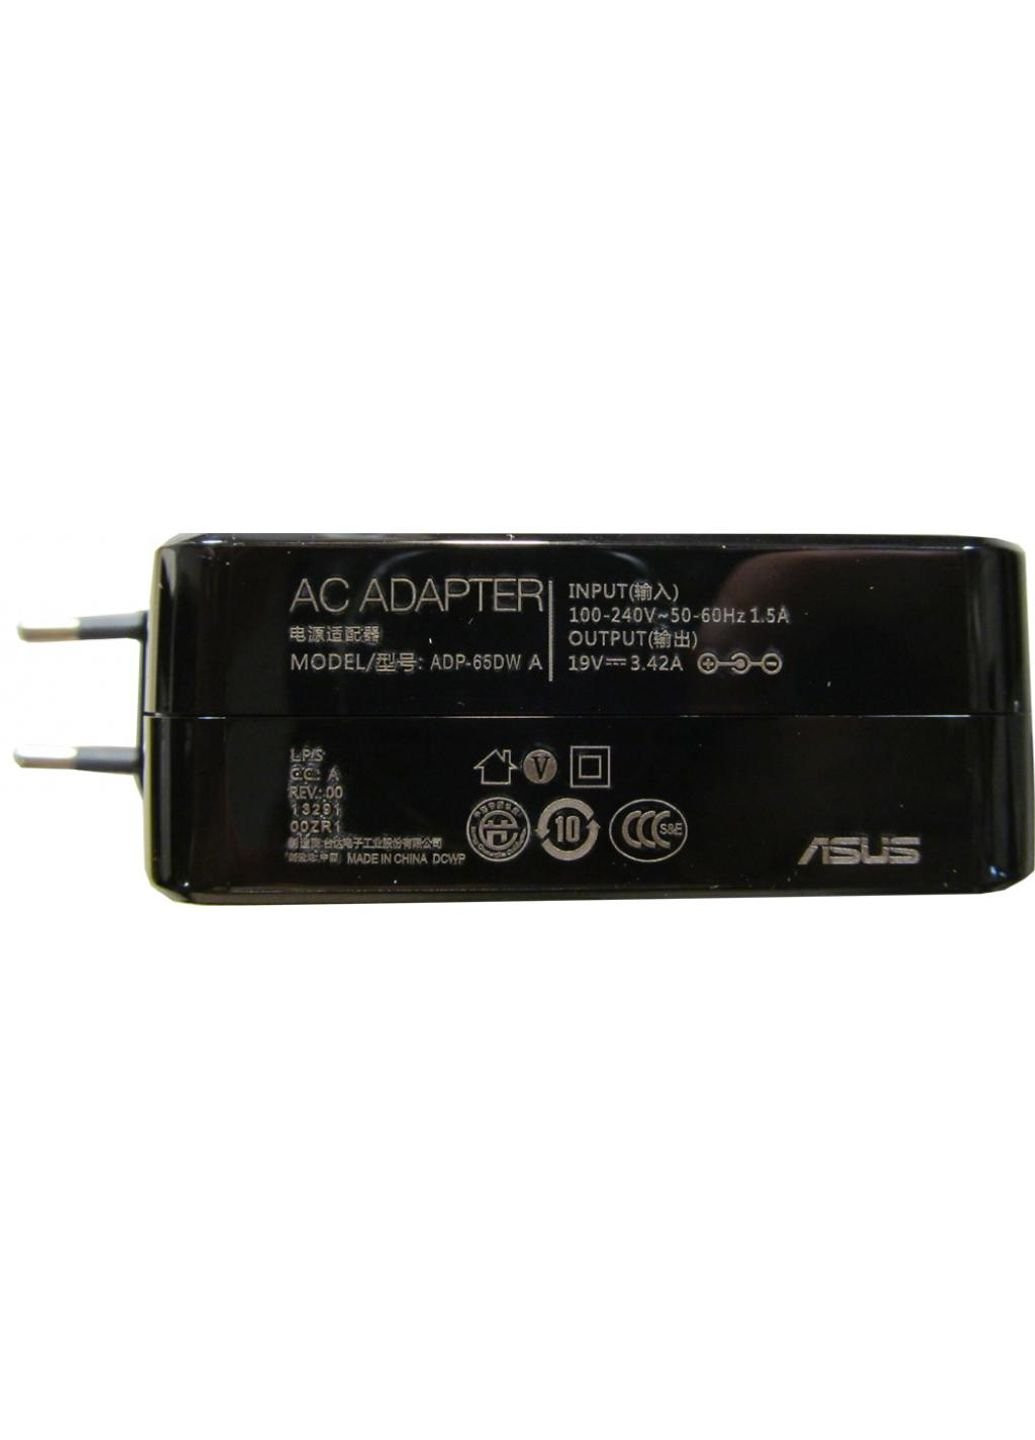 Джерело живлення до ноутбука 65W 19V 3.42A Connector 4.5 / 3.0 (PIN Всередині) (ADP-65DW A) Asus 65w 19v 3.42a разъем 4.5/3.0 (pin inside) (250054192)